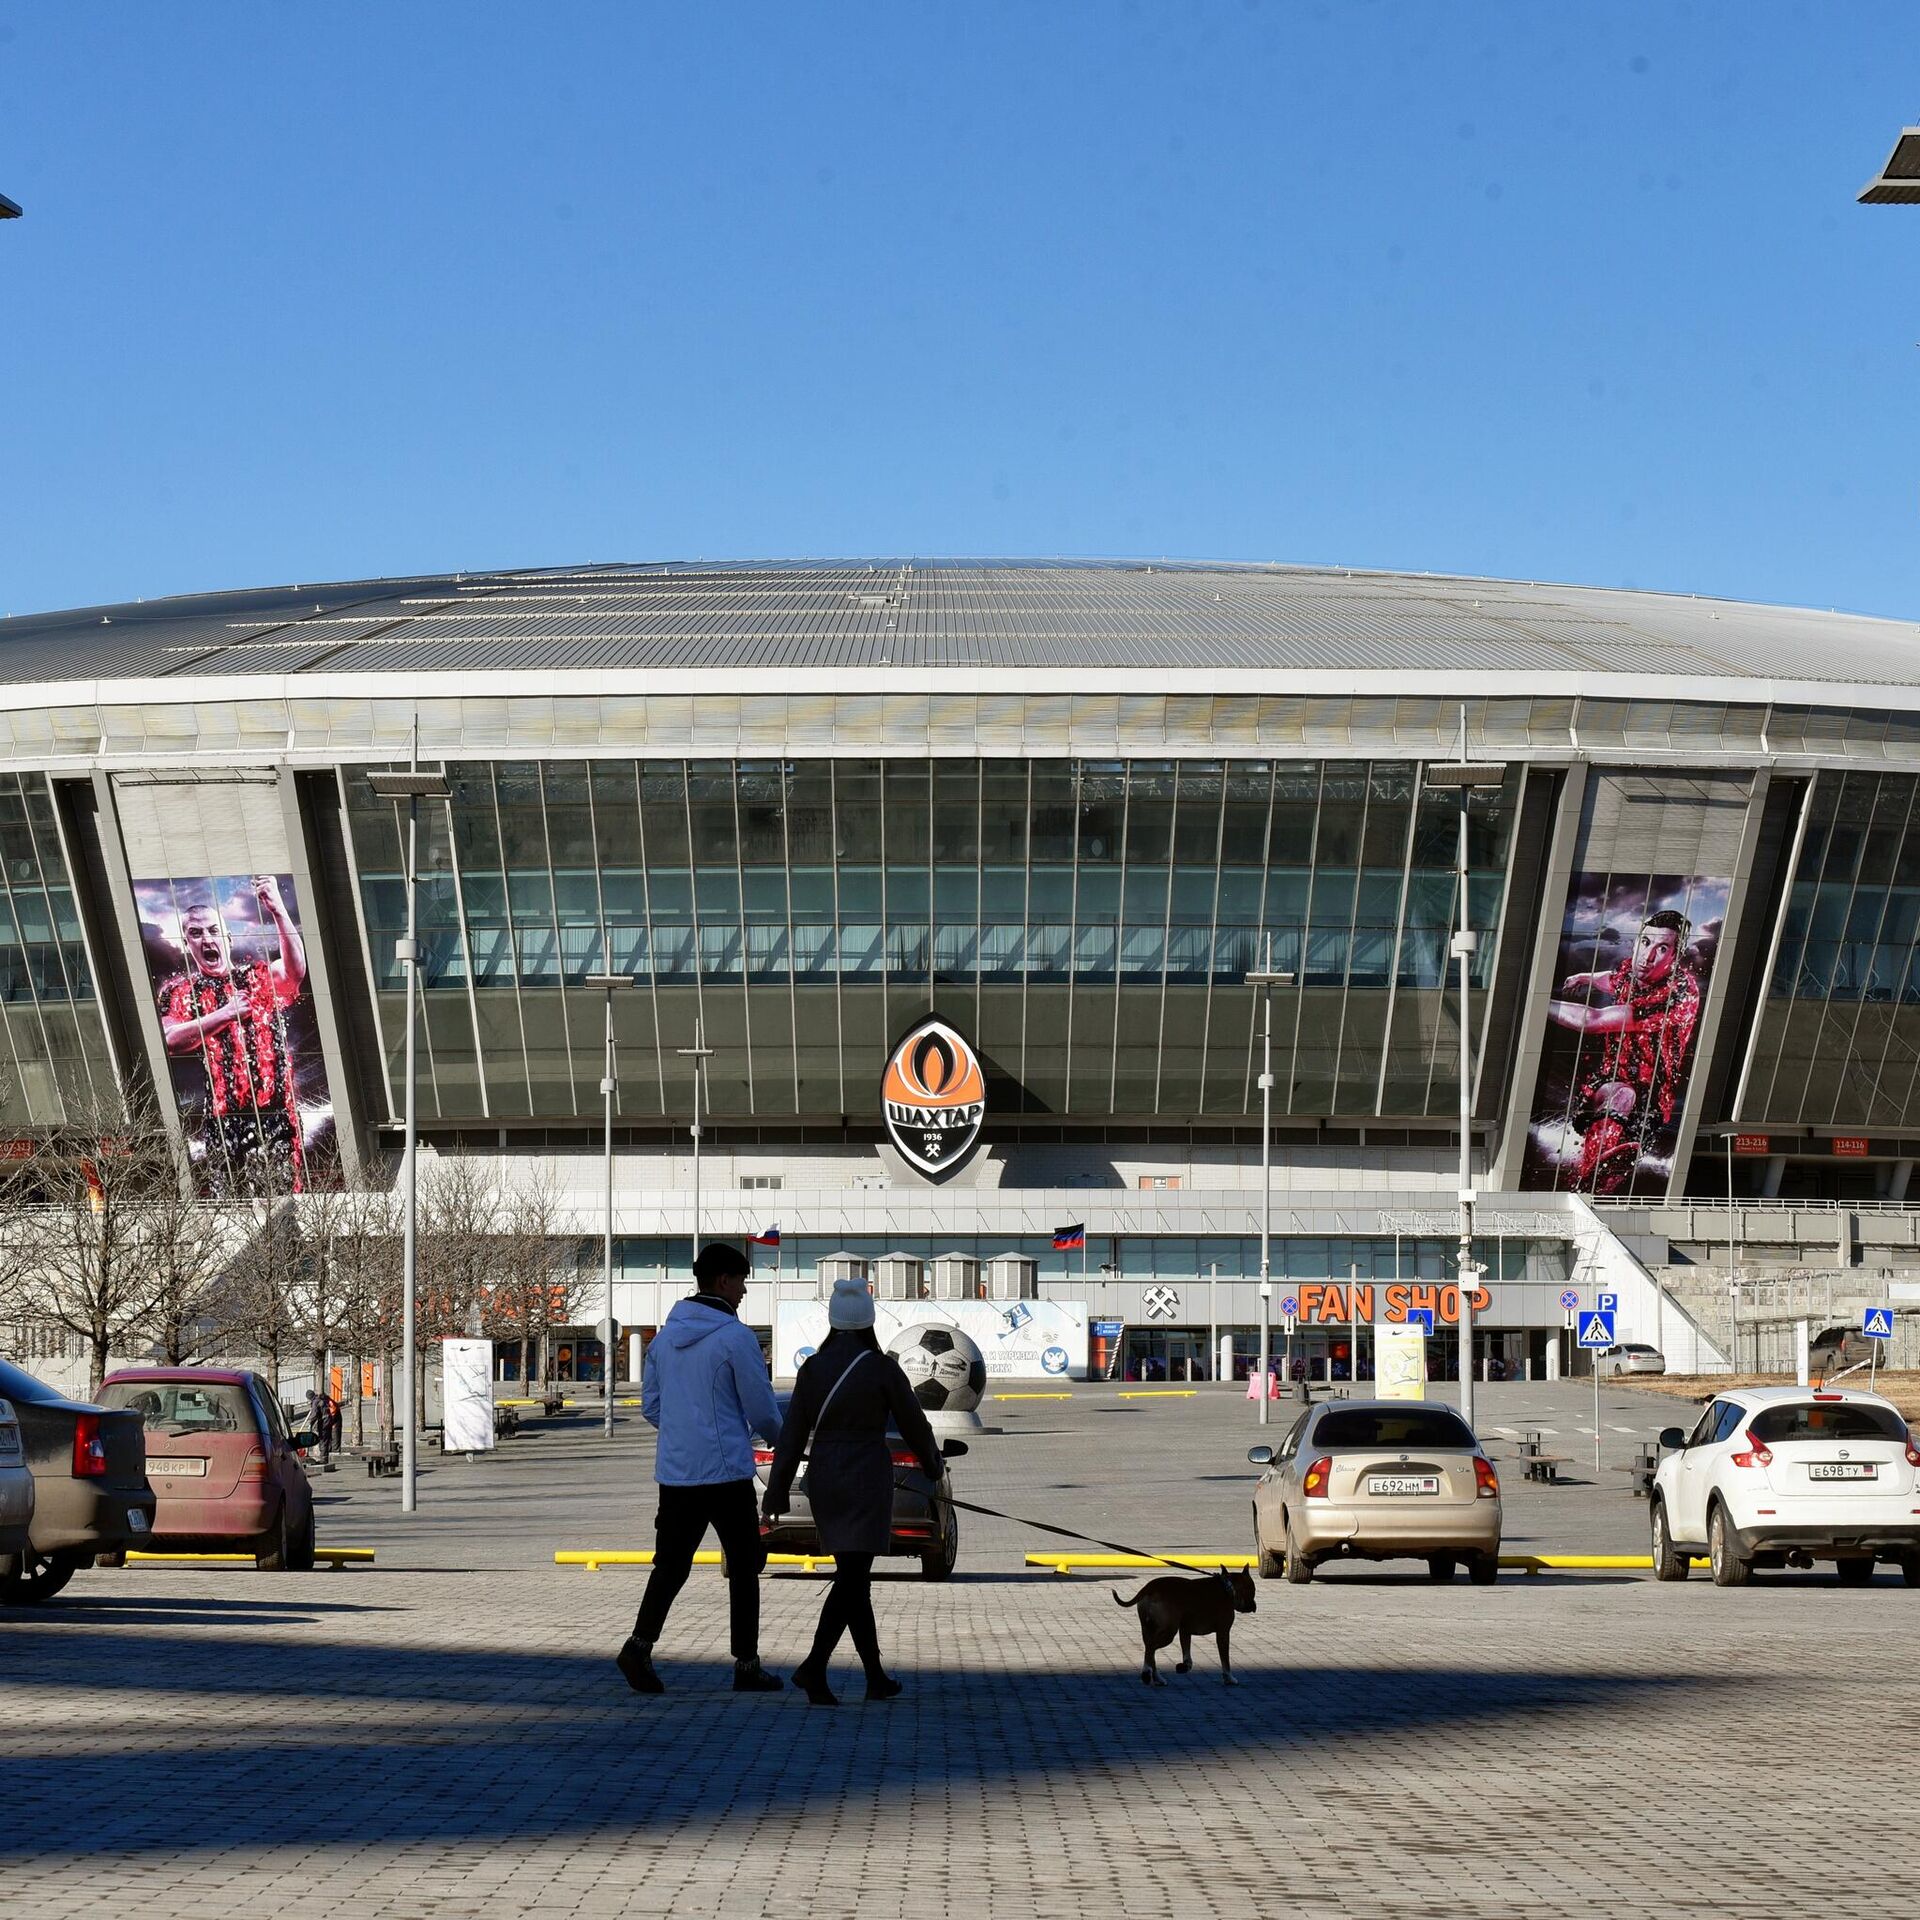 Донбасс-Арена" уже непригодна для проведения матчей, заявил Терюшков - РИА Новости Спорт, 15.04.2022